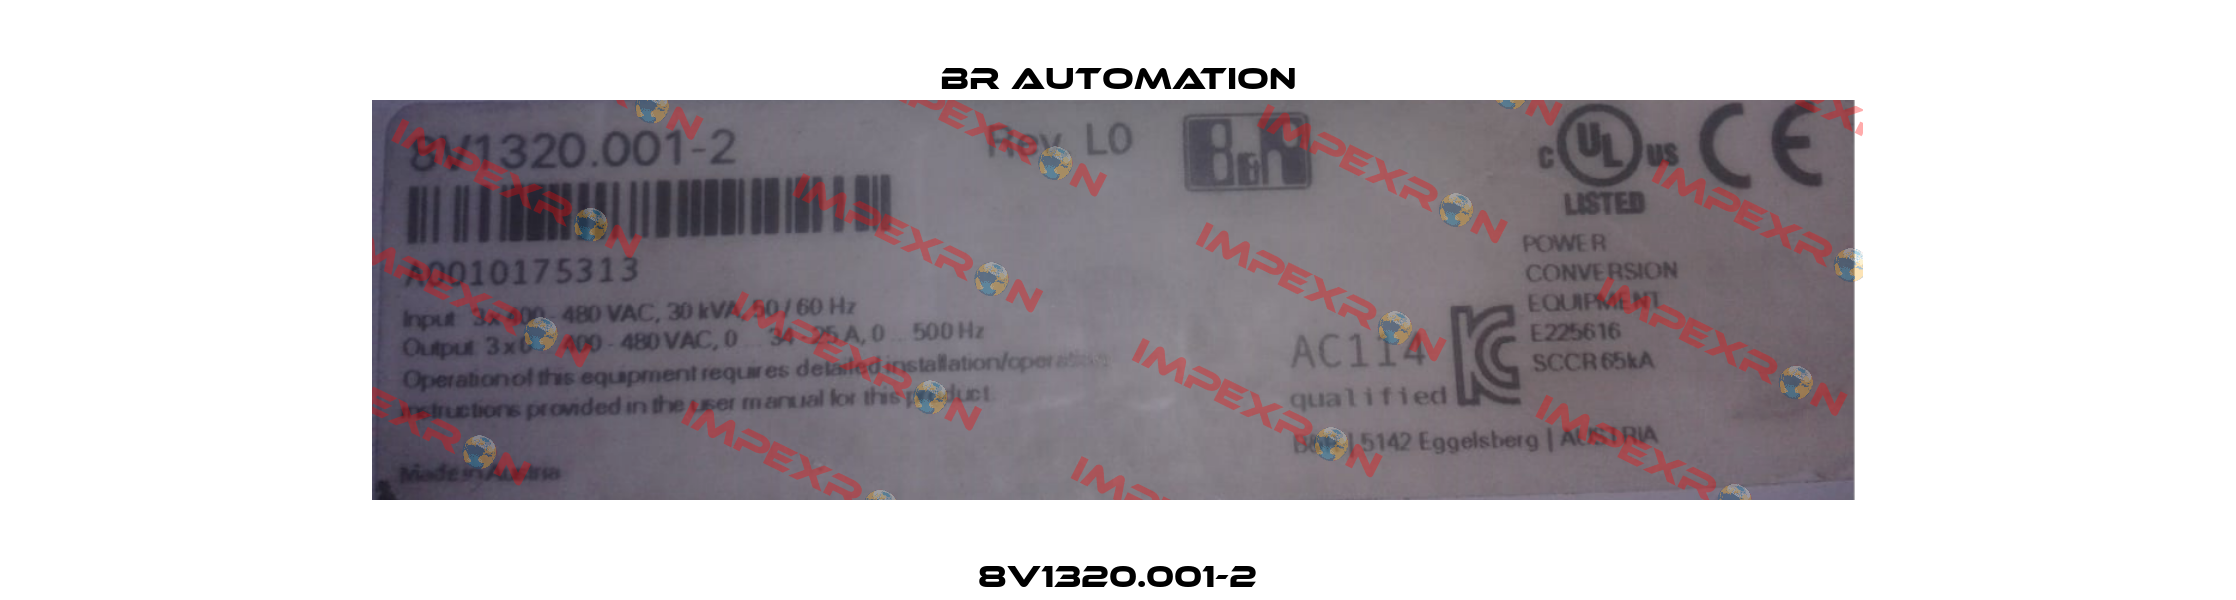 8V1320.001-2 Br Automation